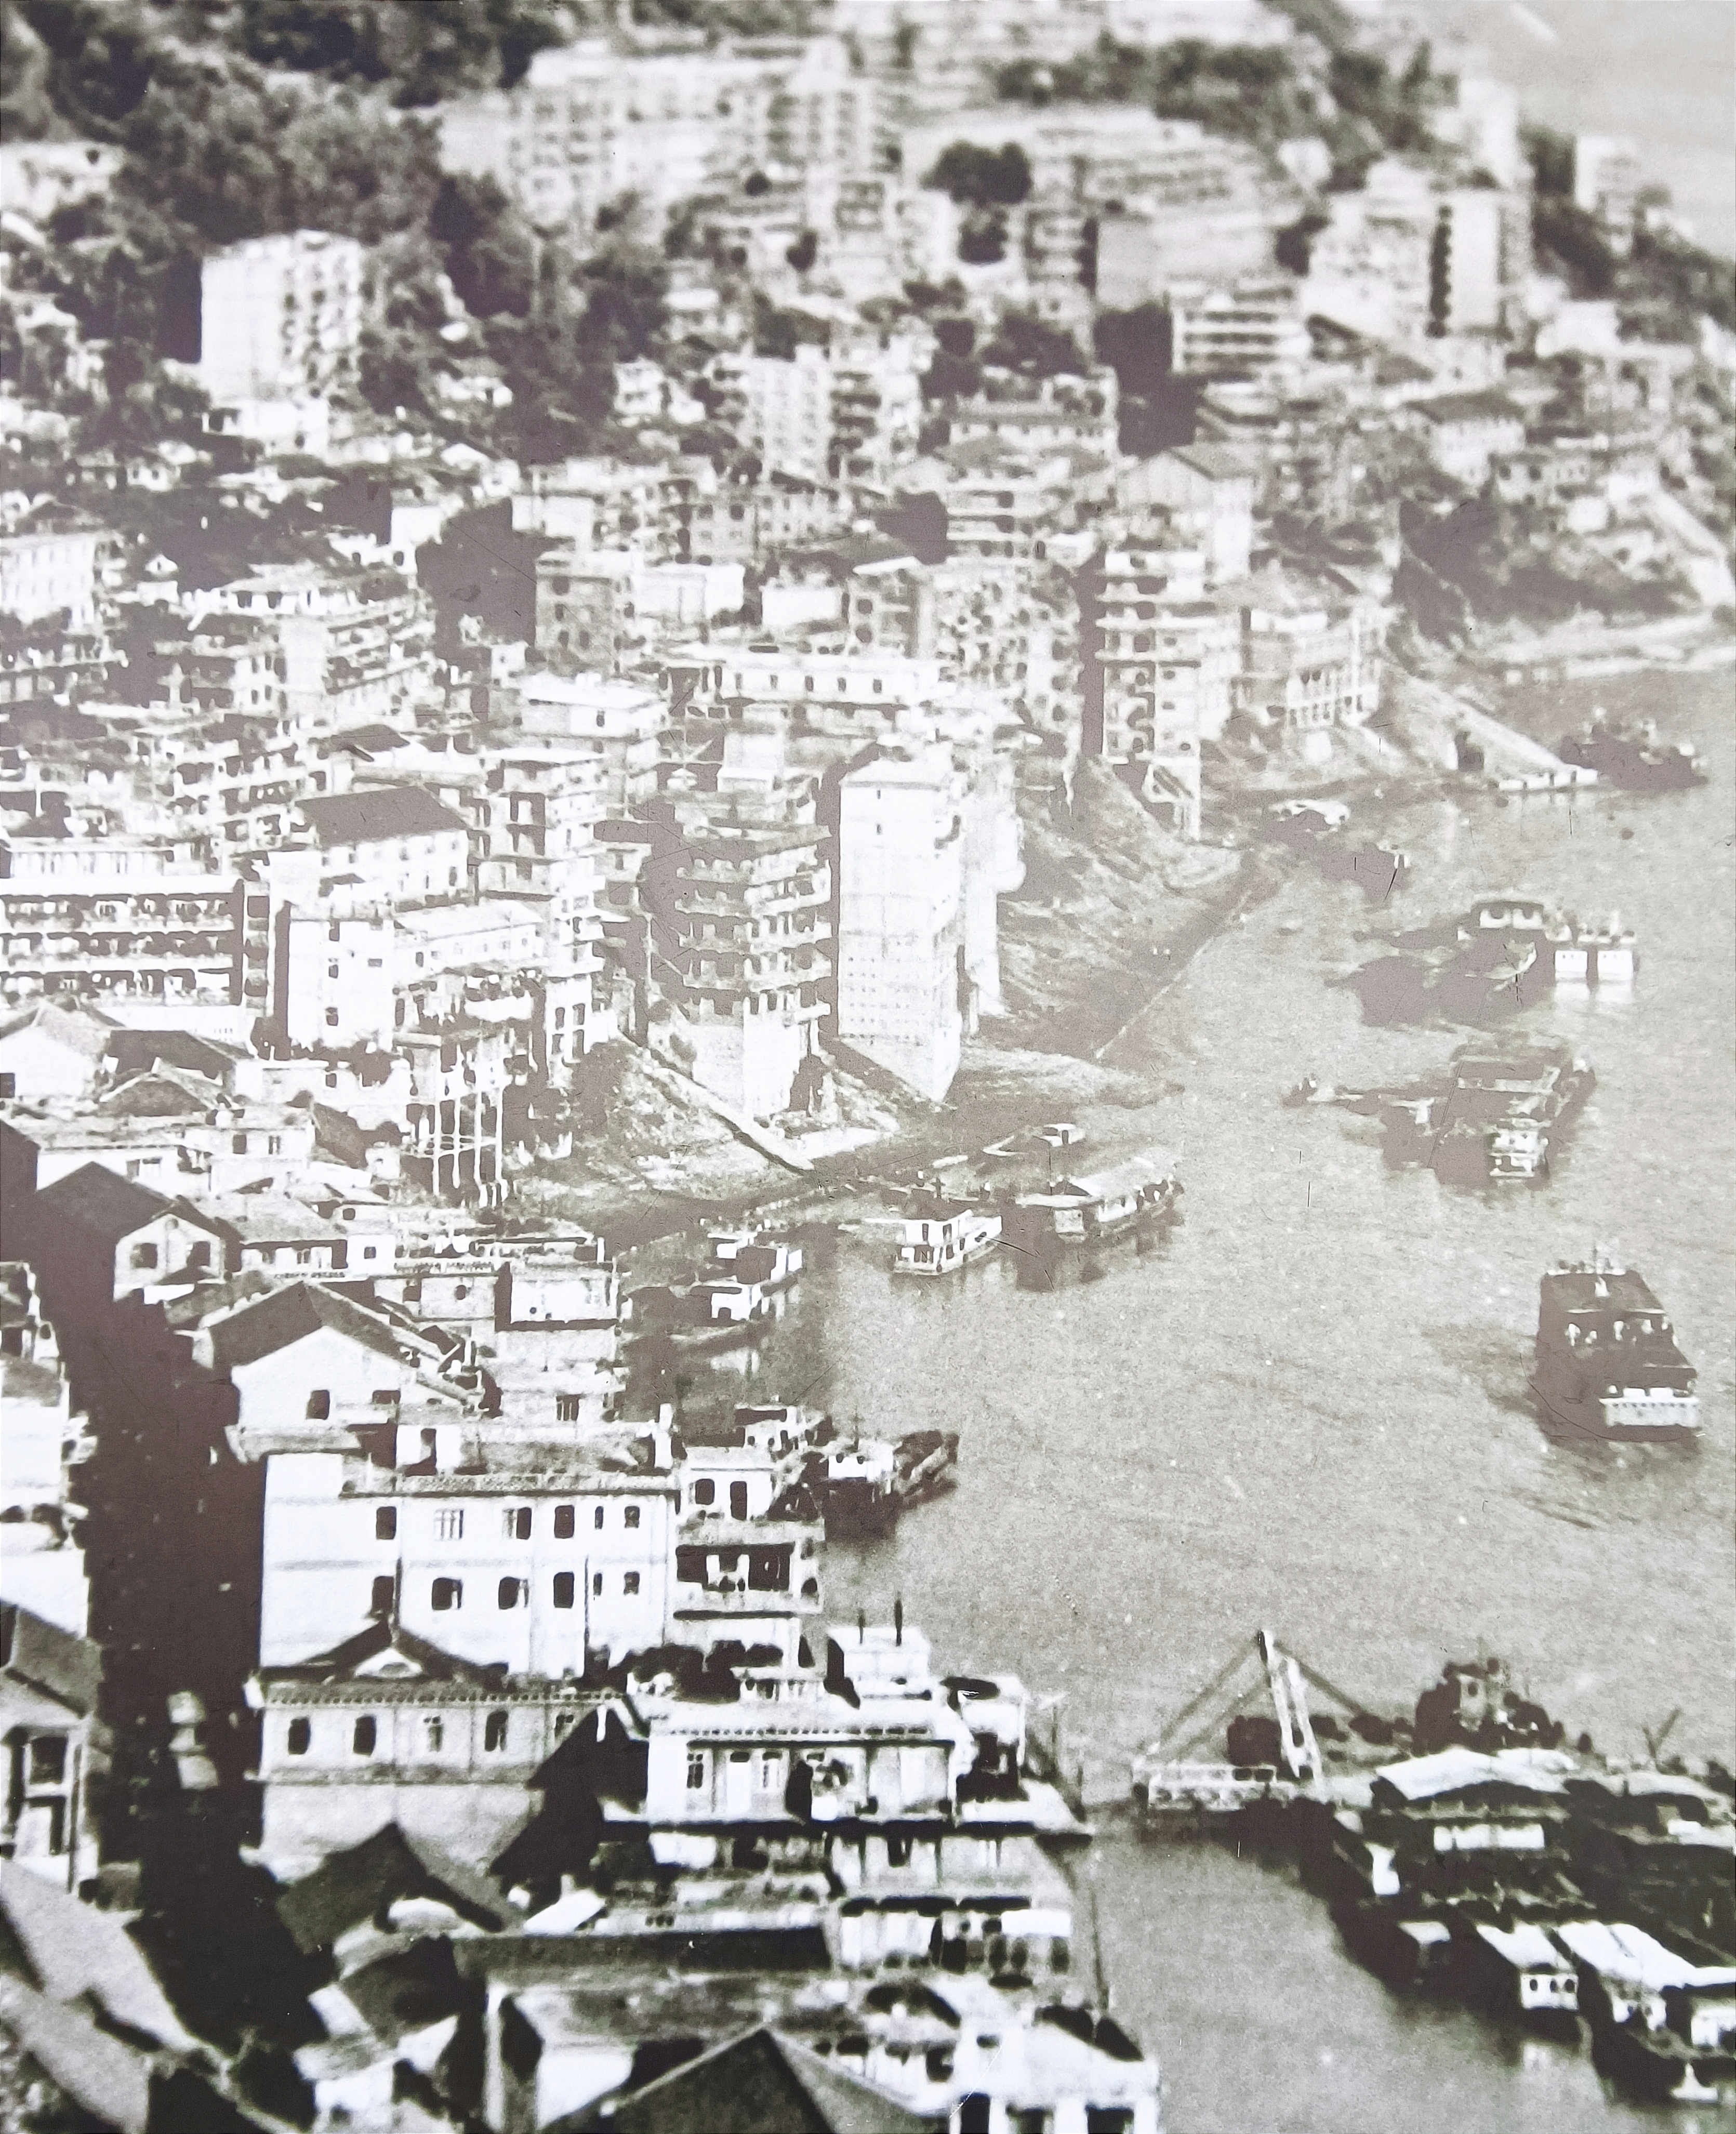 巴东县老城的历史照片